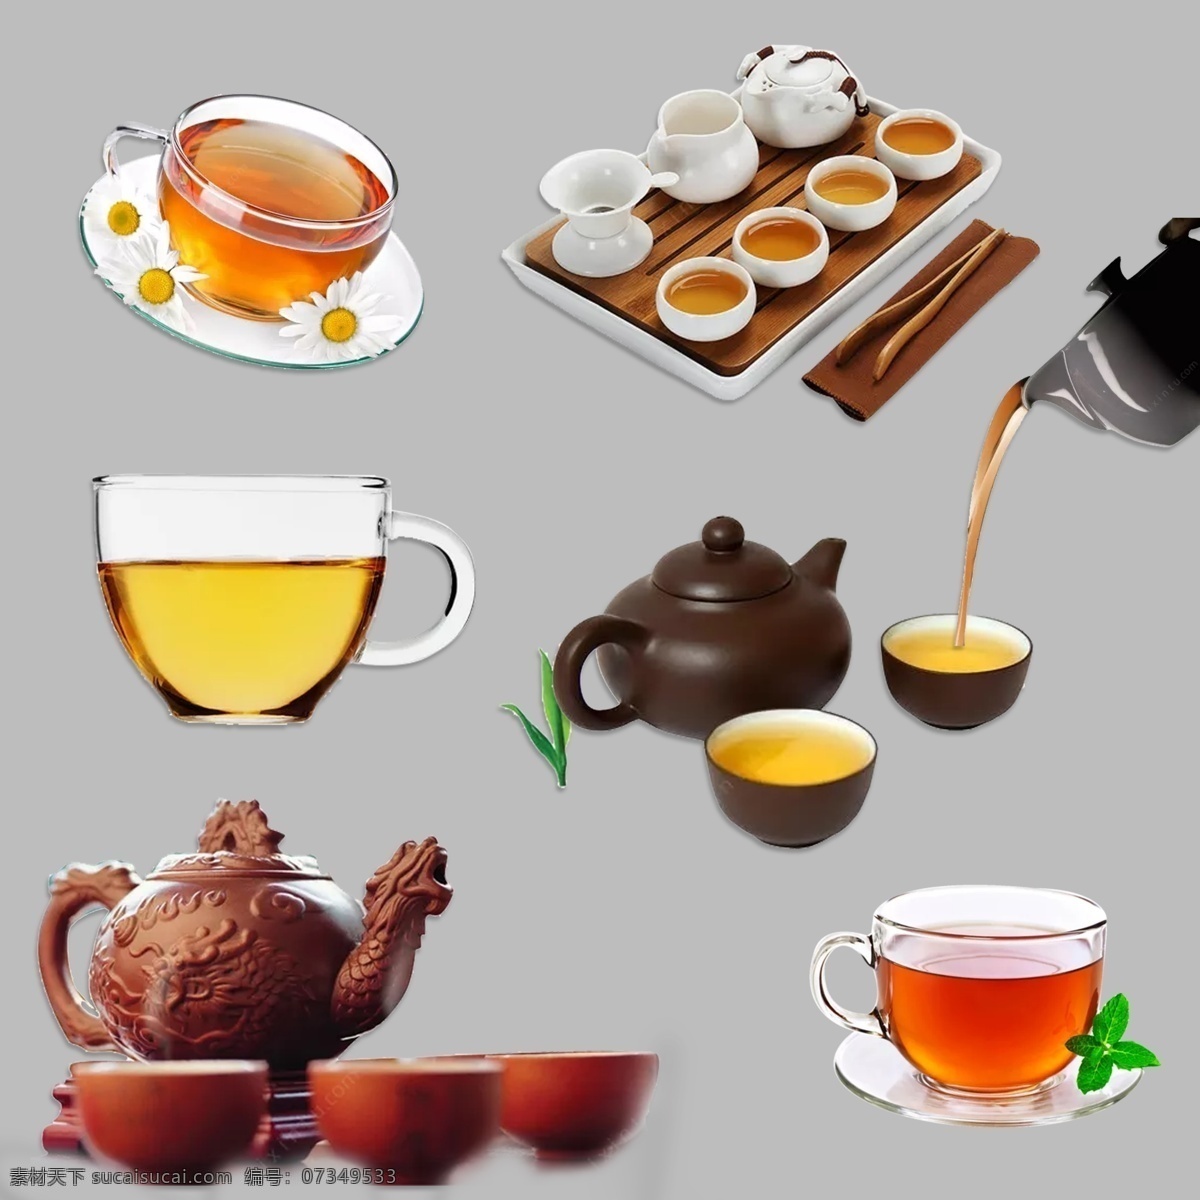 茶元素 茶杯 茶壶 泡茶 倒茶 茶具 茶 免扣 茶叶